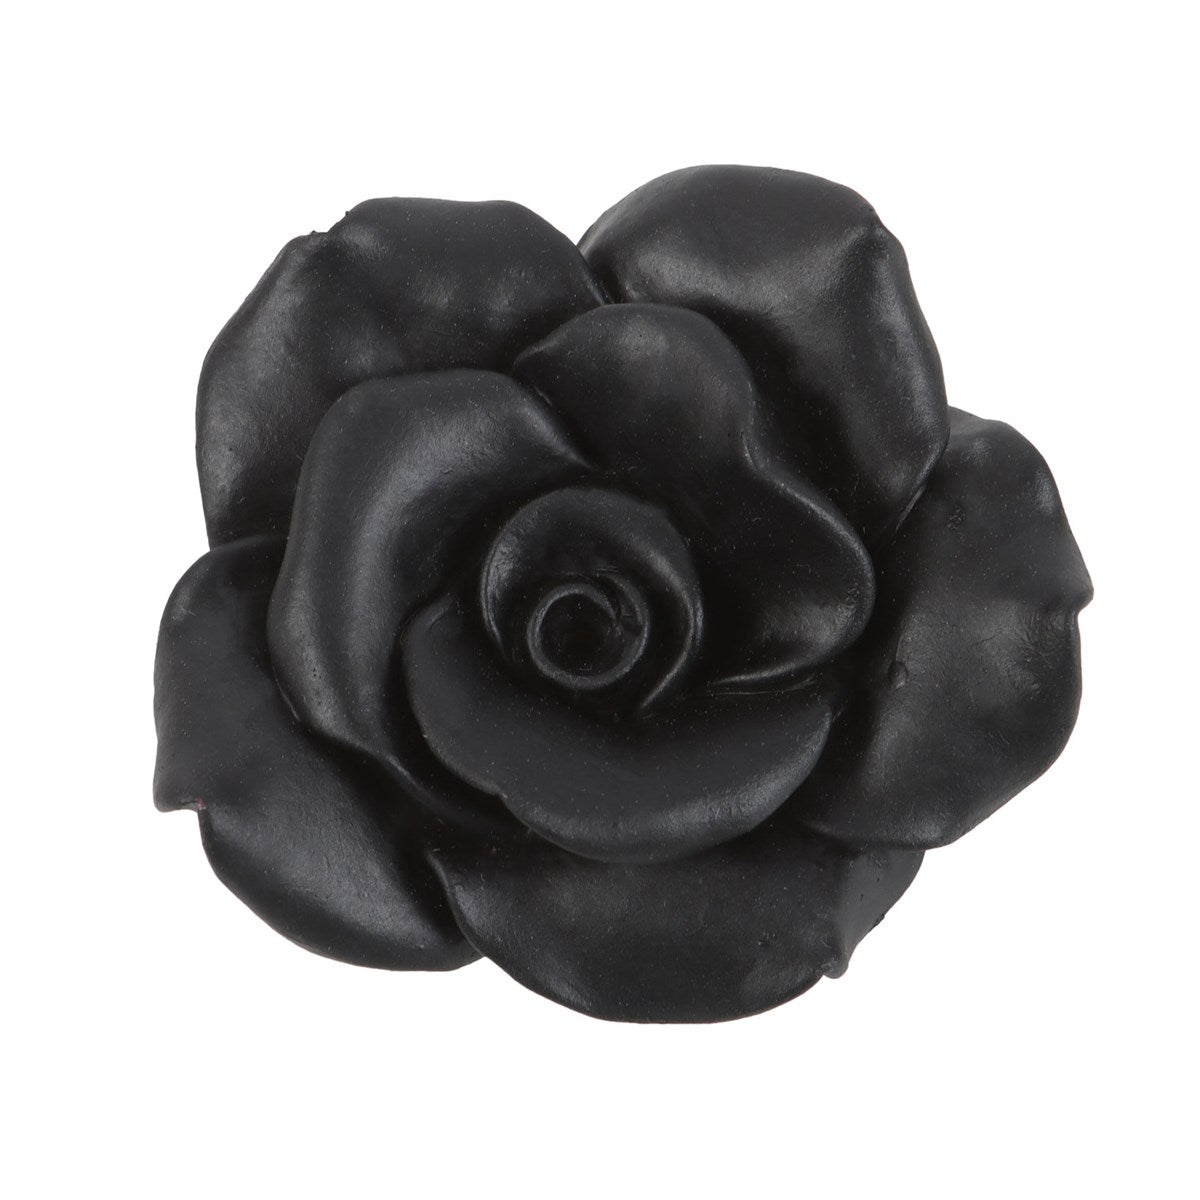 Black Rose Incense Holder - Rivendell Shop